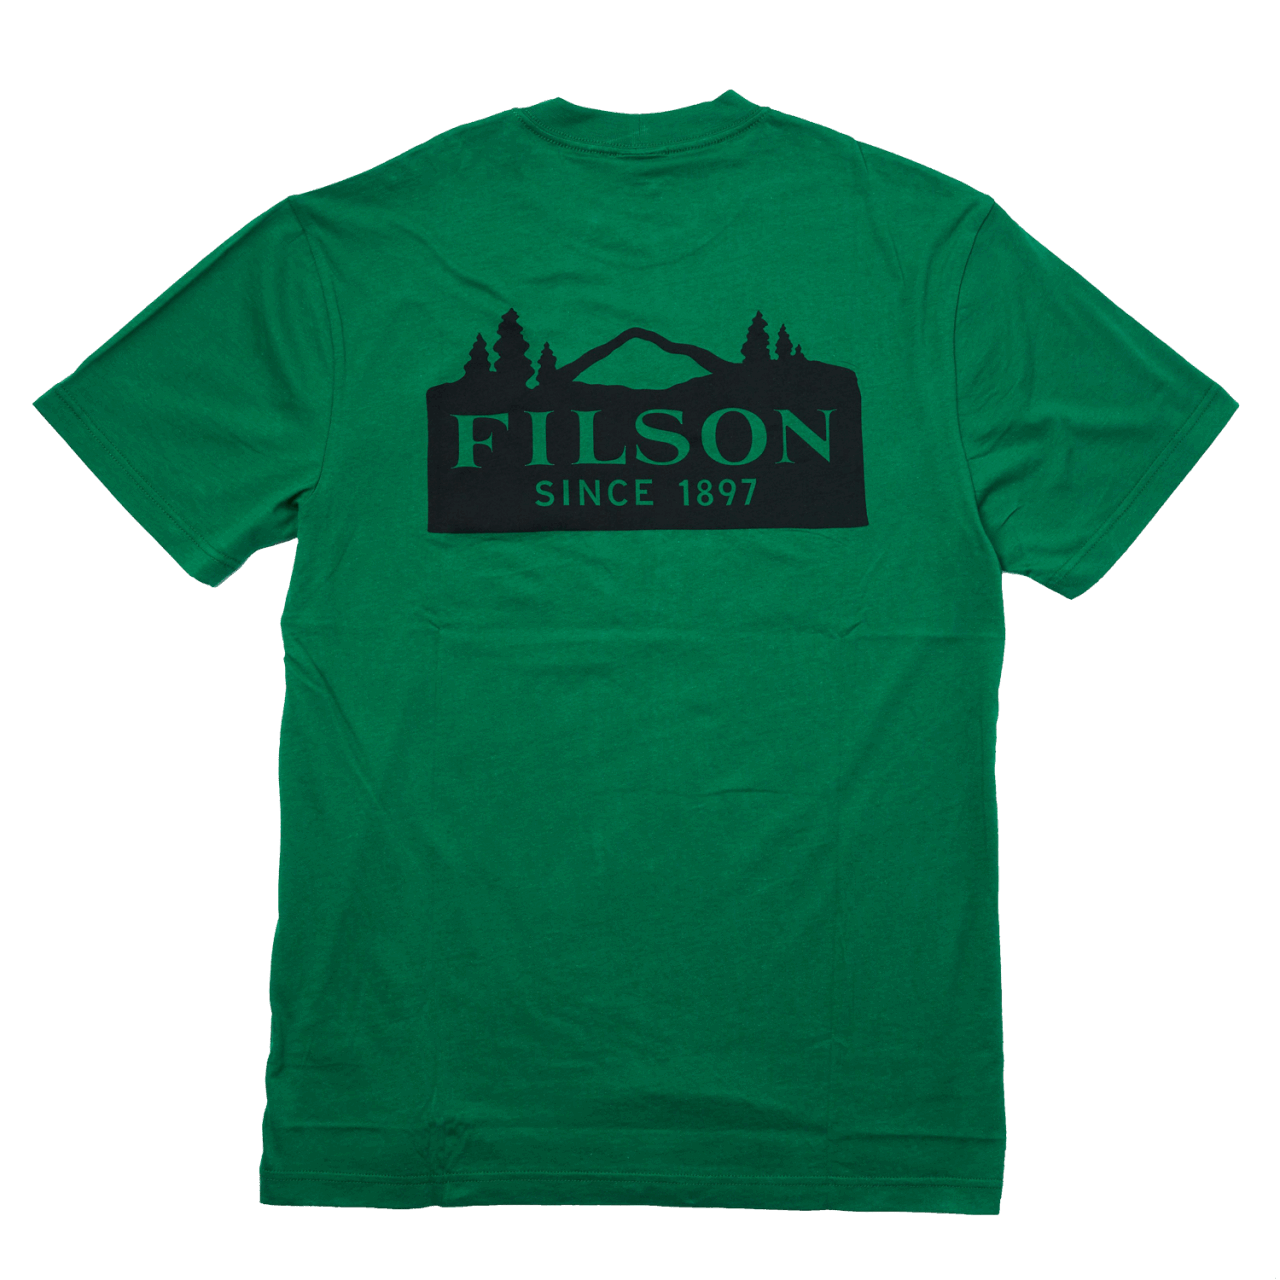 Filson Ranger Graphic T-Shirt - green